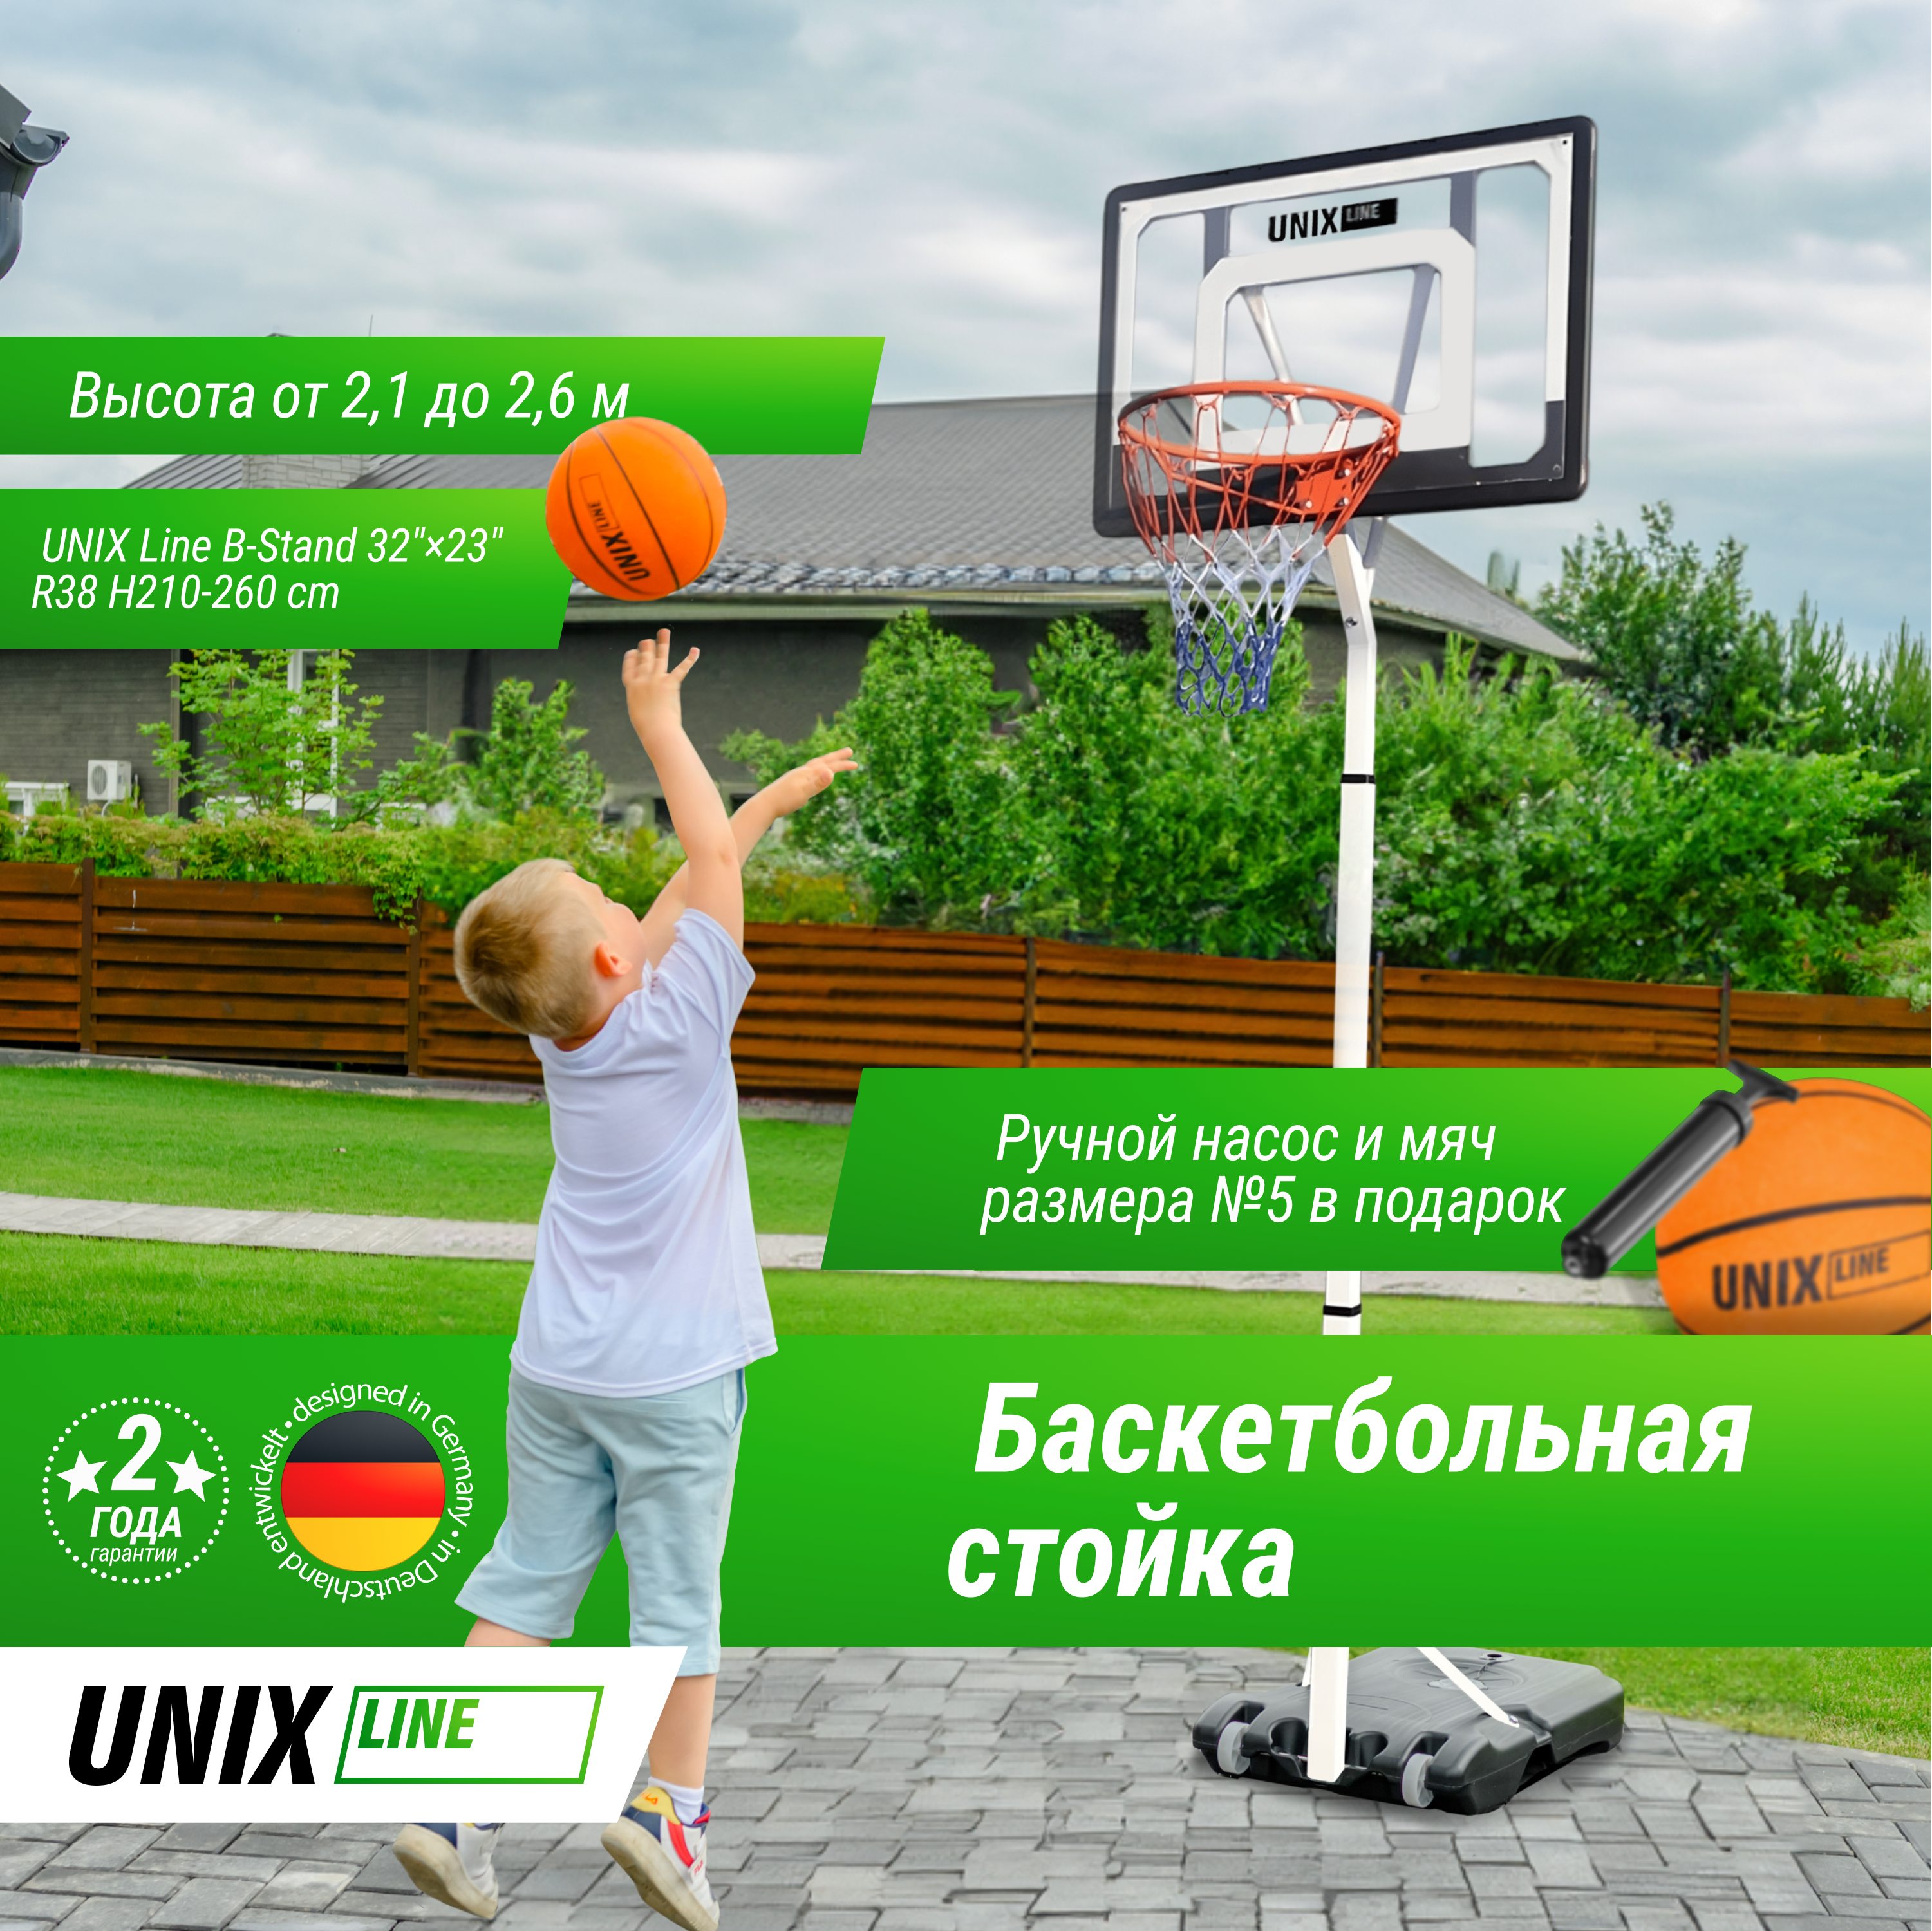 Баскетбольная стойка UNIX Line B-Stand 32"x23" R45 H210-260cm - 3 